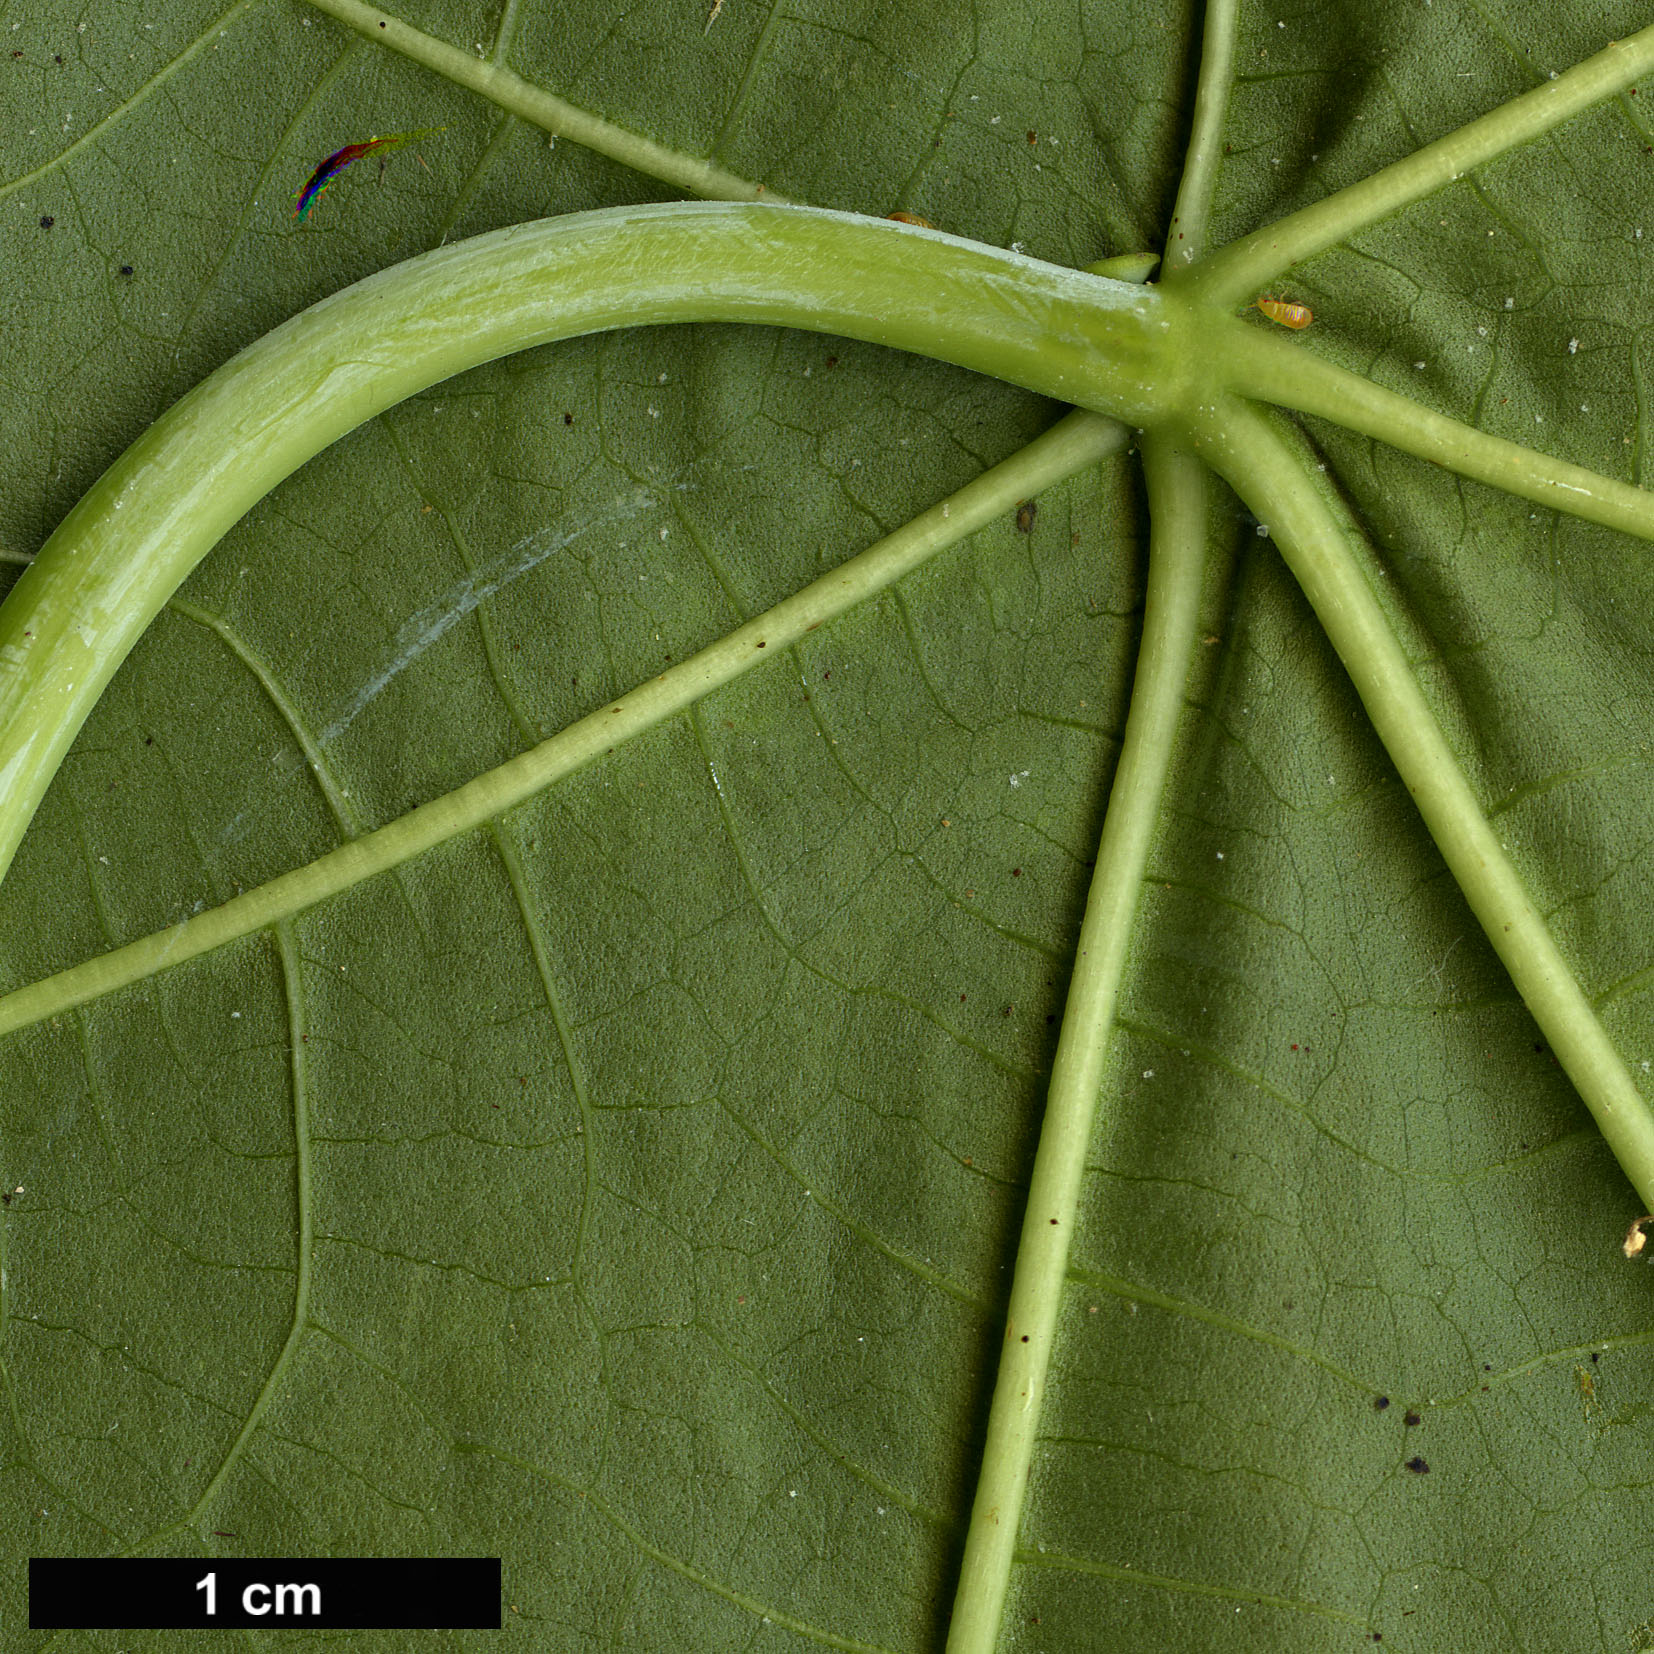 High resolution image: Family: Euphorbiaceae - Genus: Ricinus - Taxon: communis